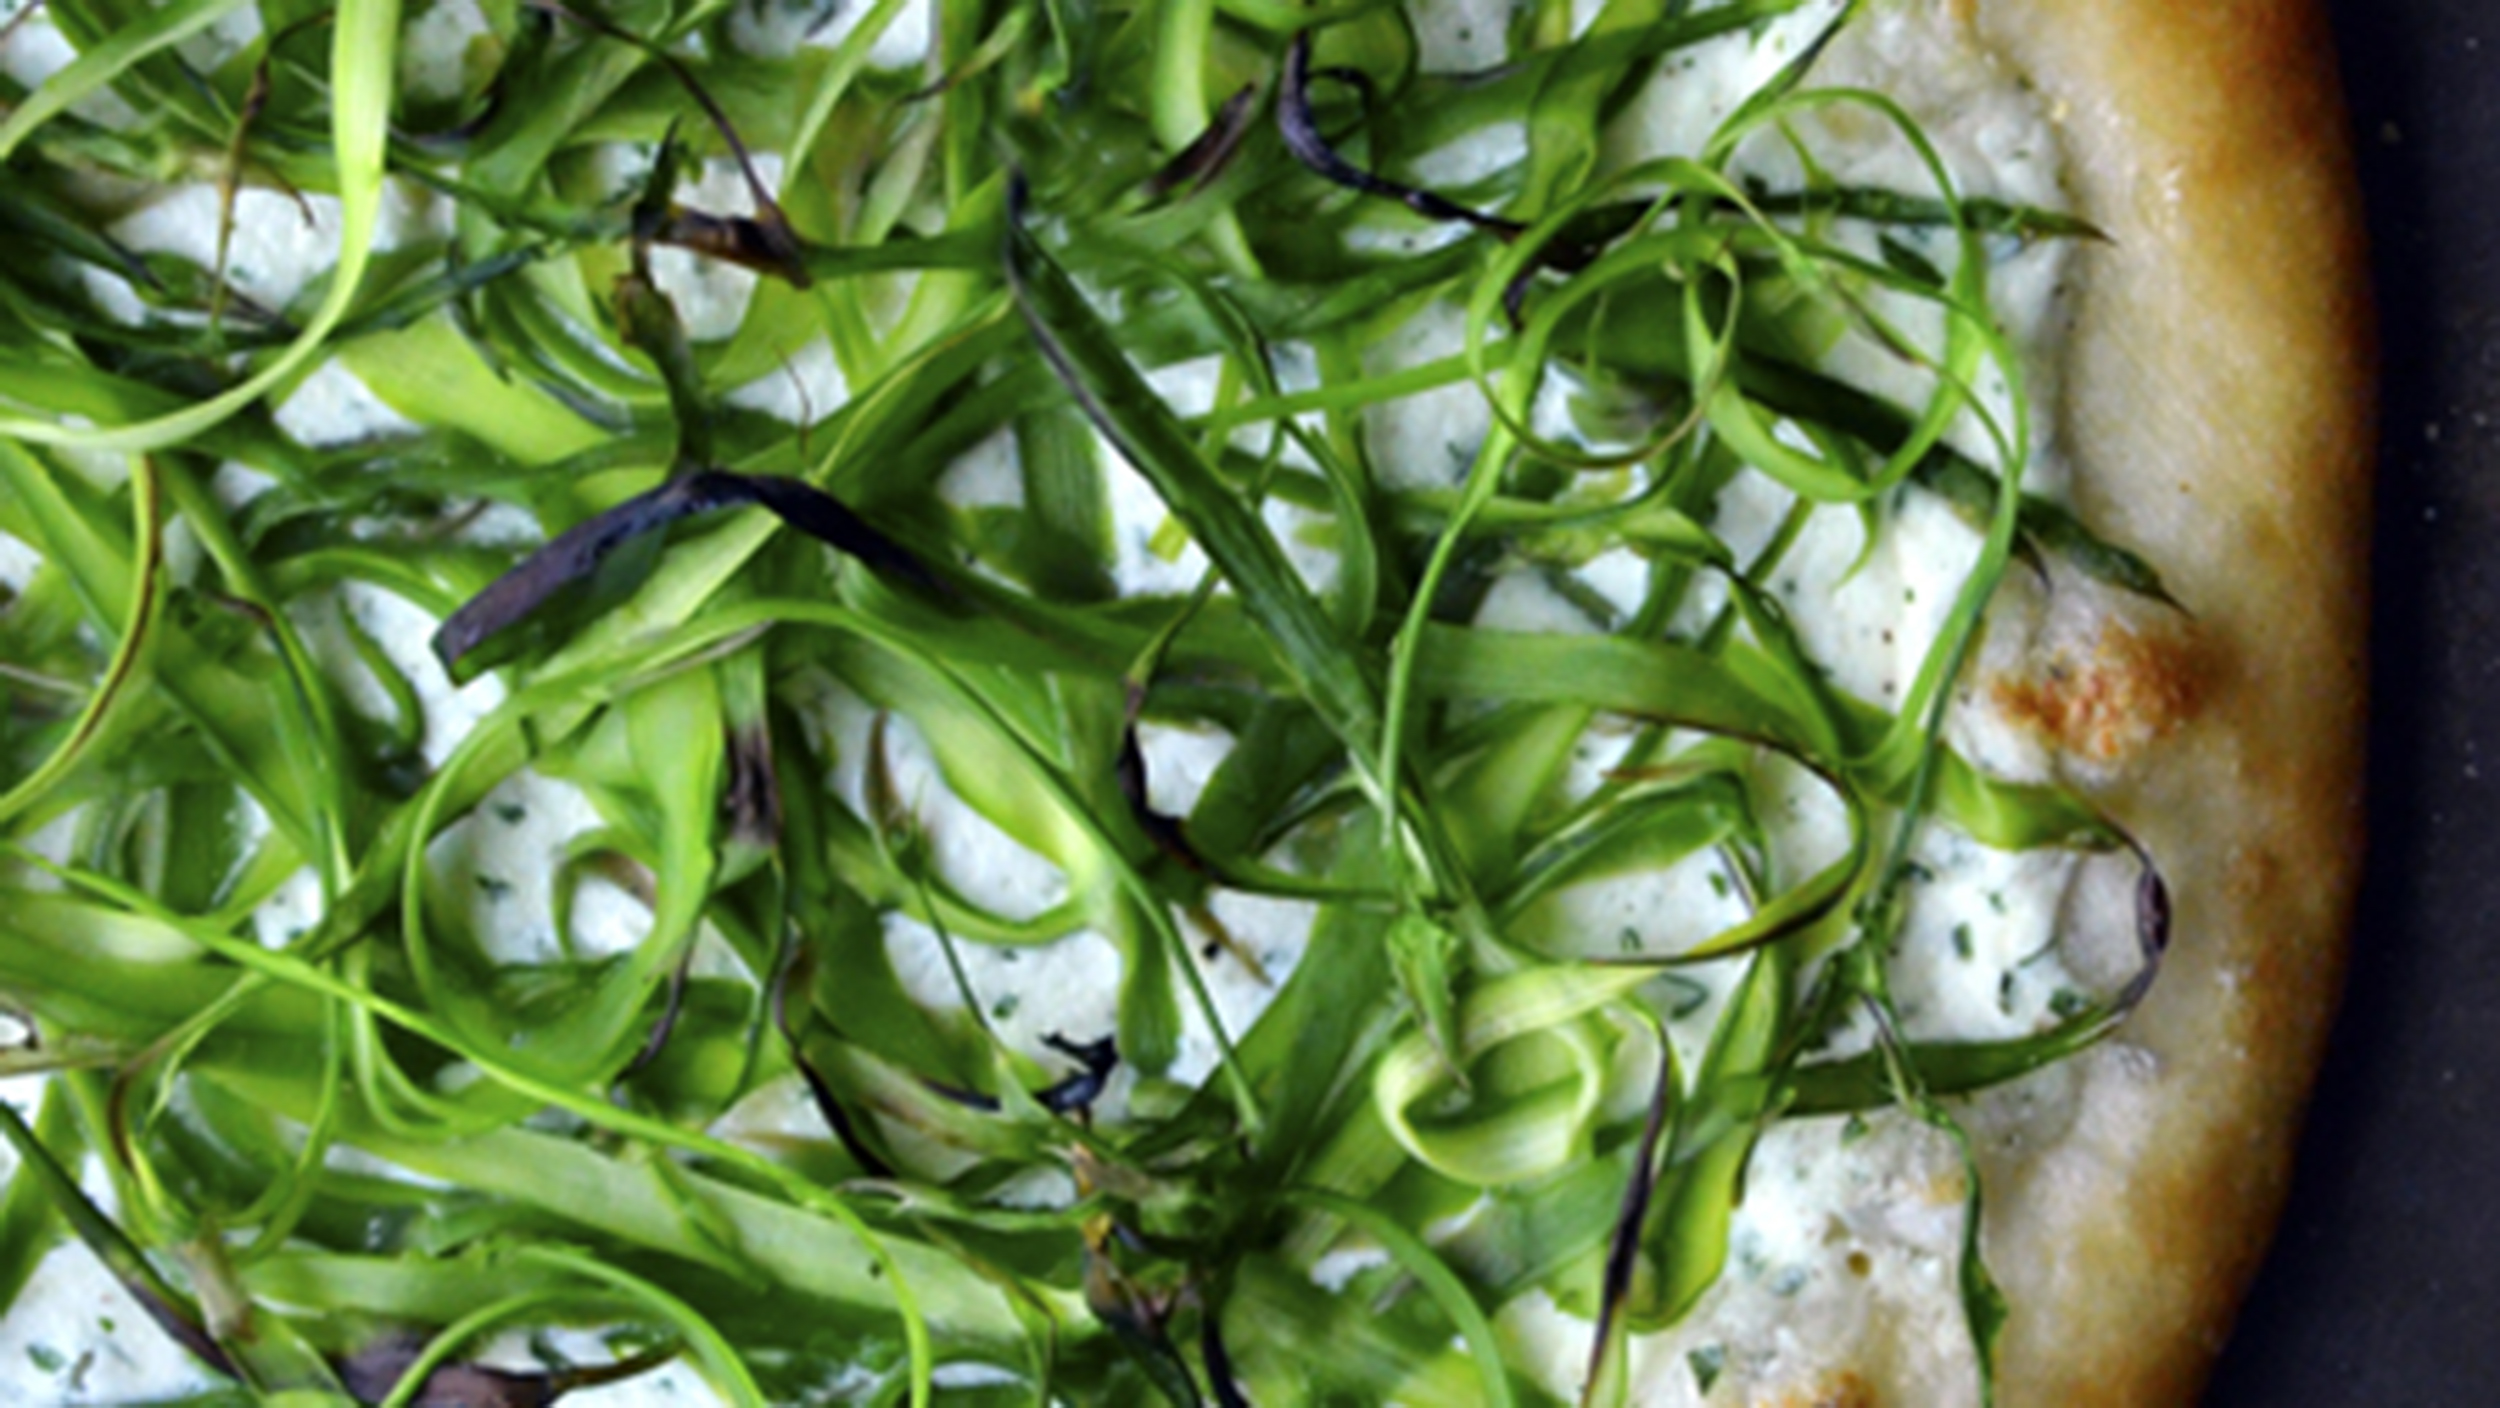 Go green! Fresh asparagus recipes for spring - TODAY.com